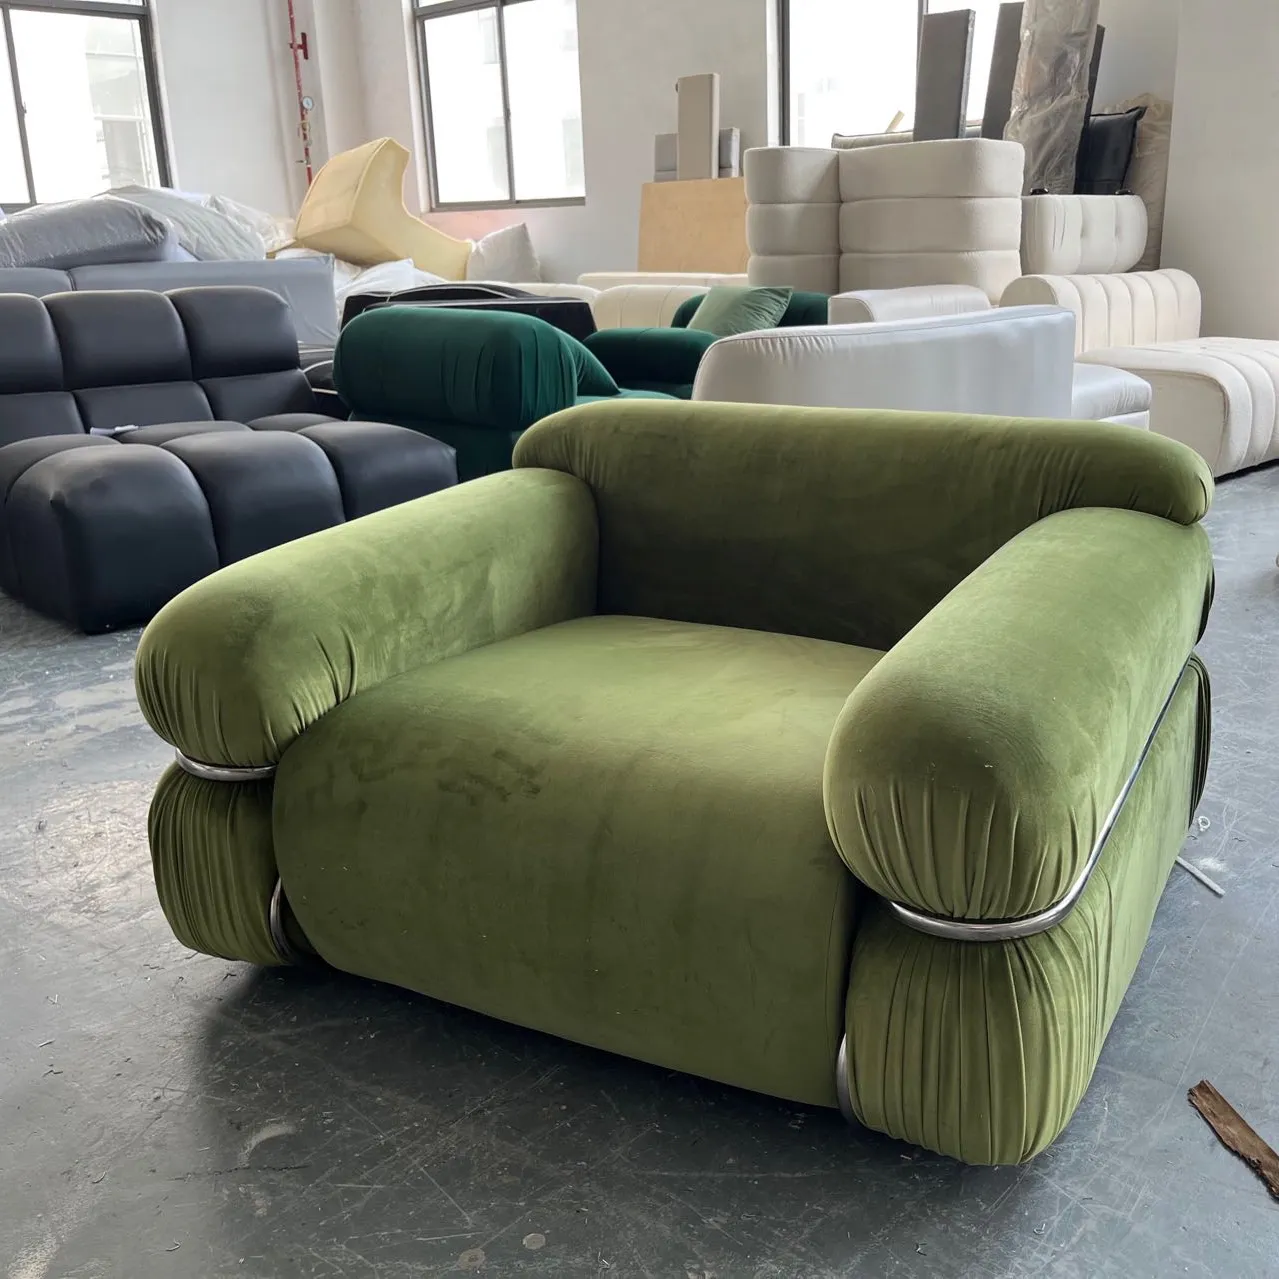 2022ใหม่โซฟาห้องนั่งเล่นโซฟาพักผ่อนโซฟาทันสมัยสำหรับเฟอร์นิเจอร์บ้าน